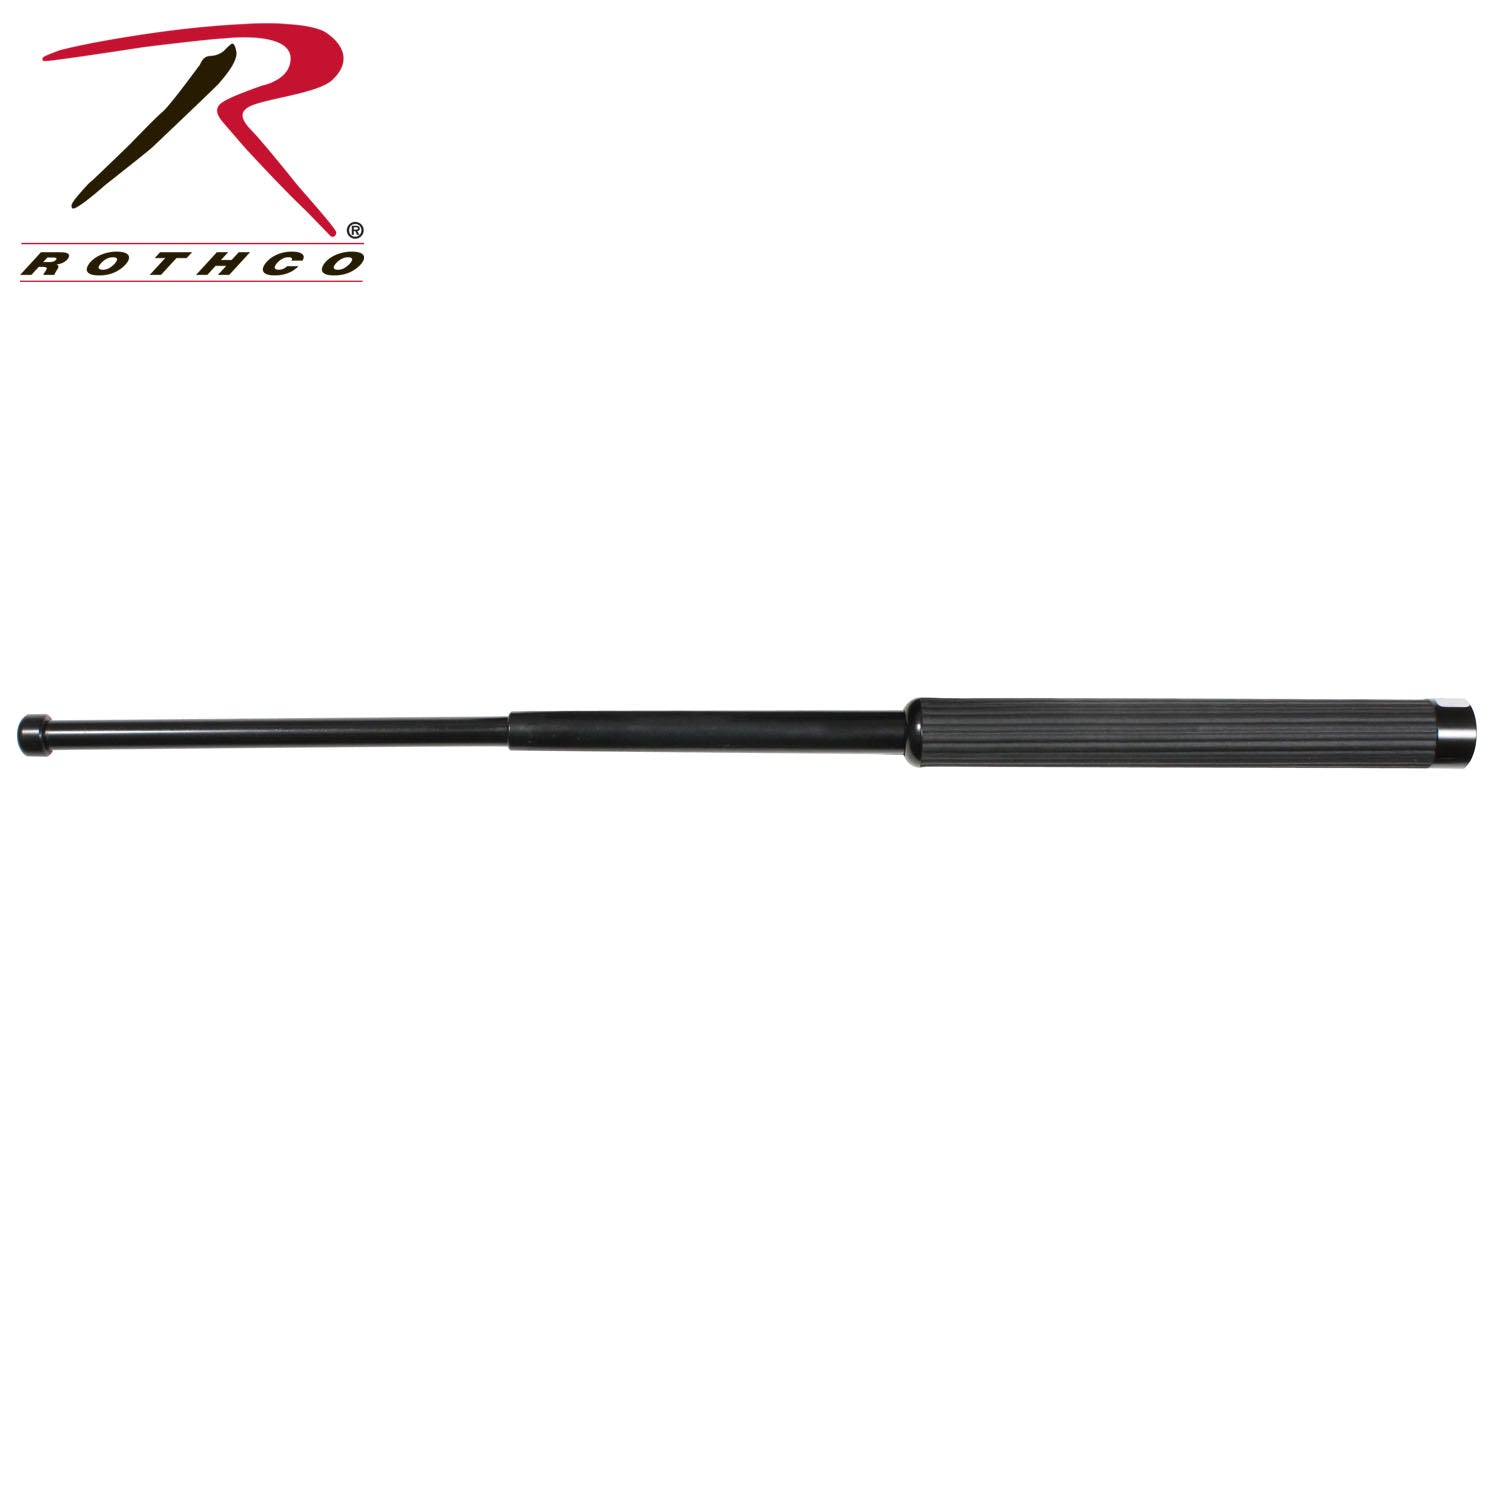 Rothco Expandable Steel Baton With TPU Tip